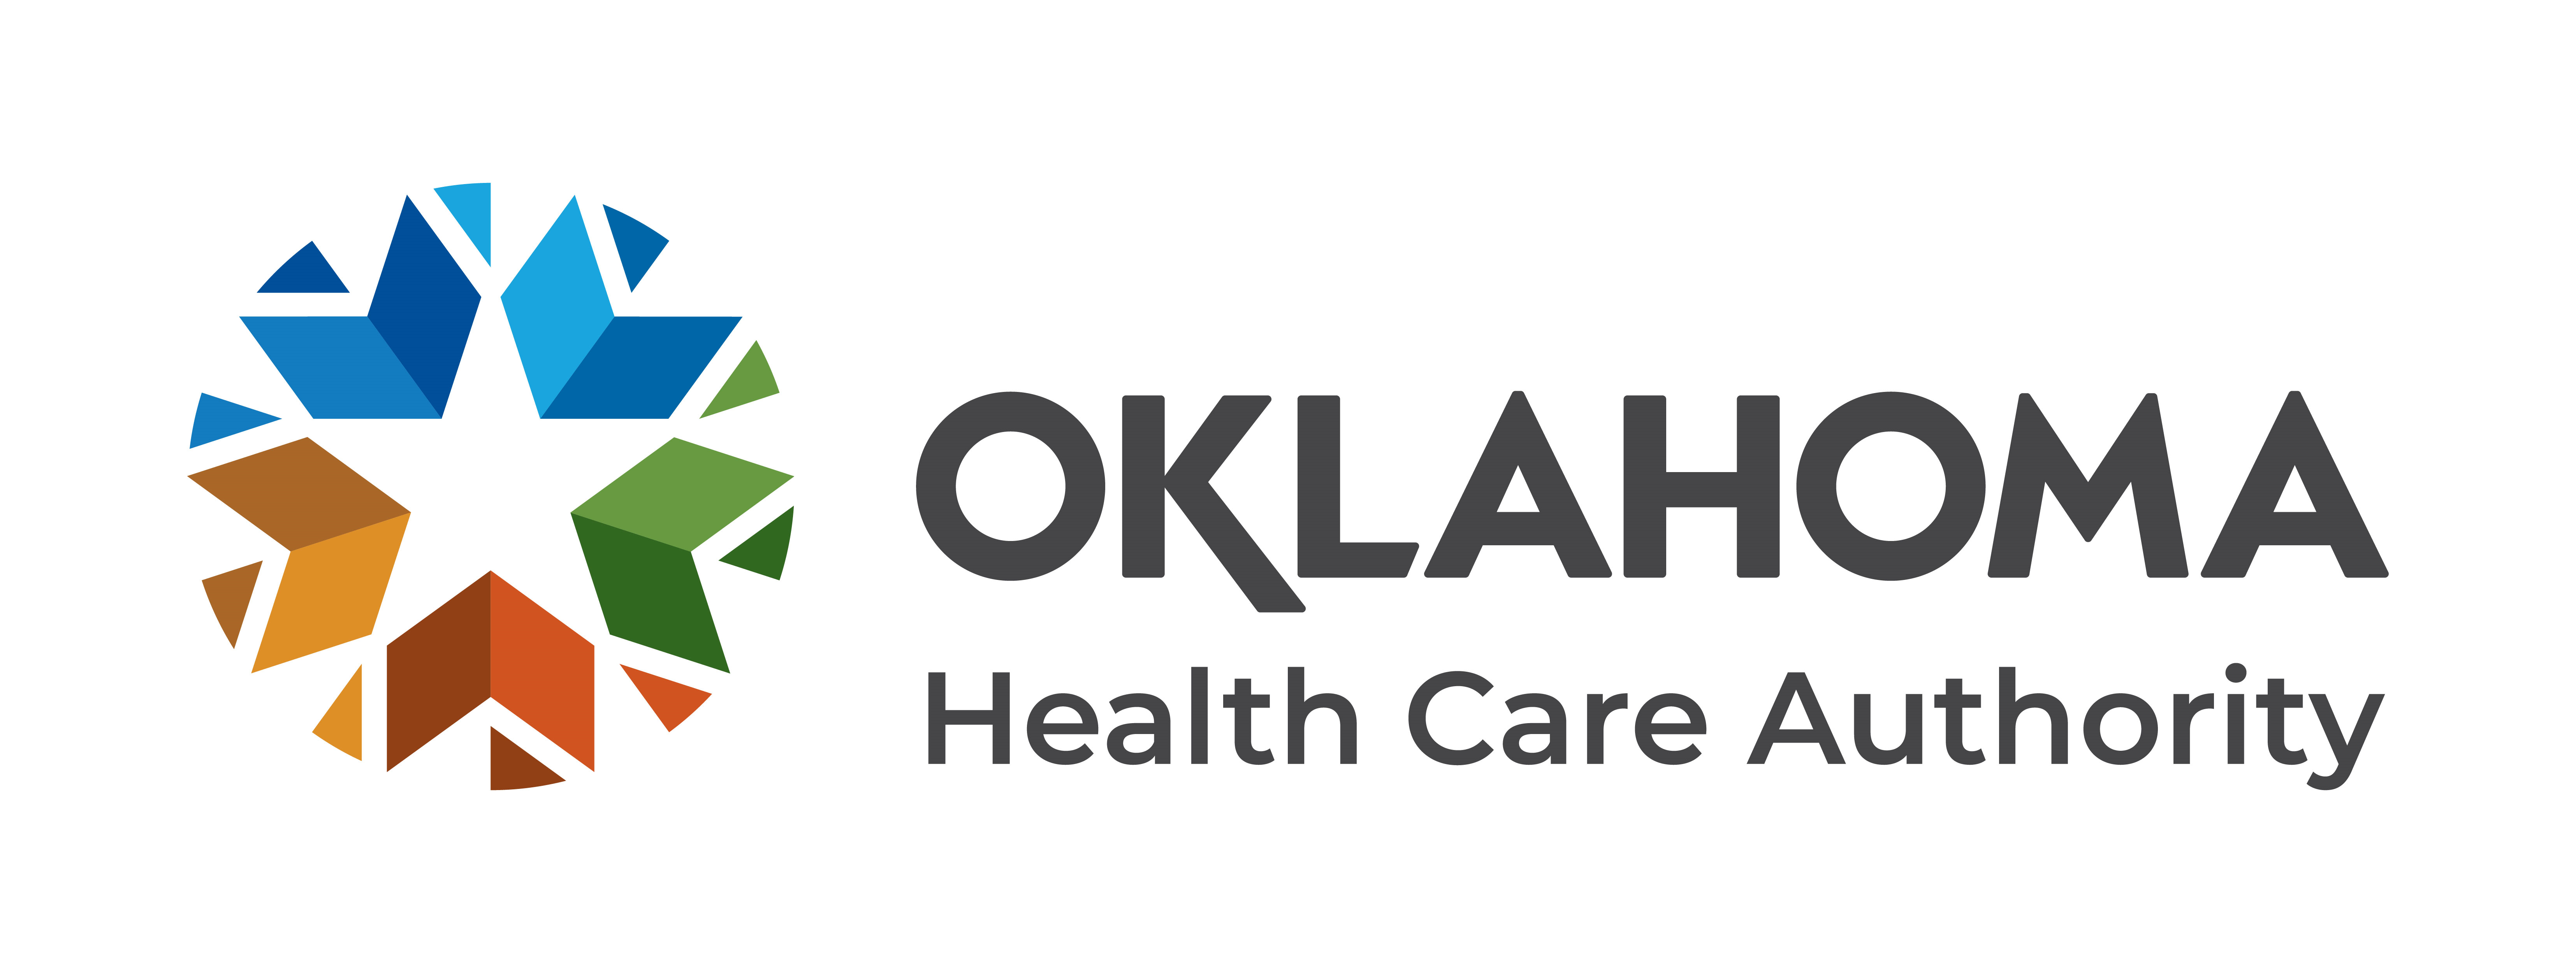 Oklahoma Health Care Authority Company Logo